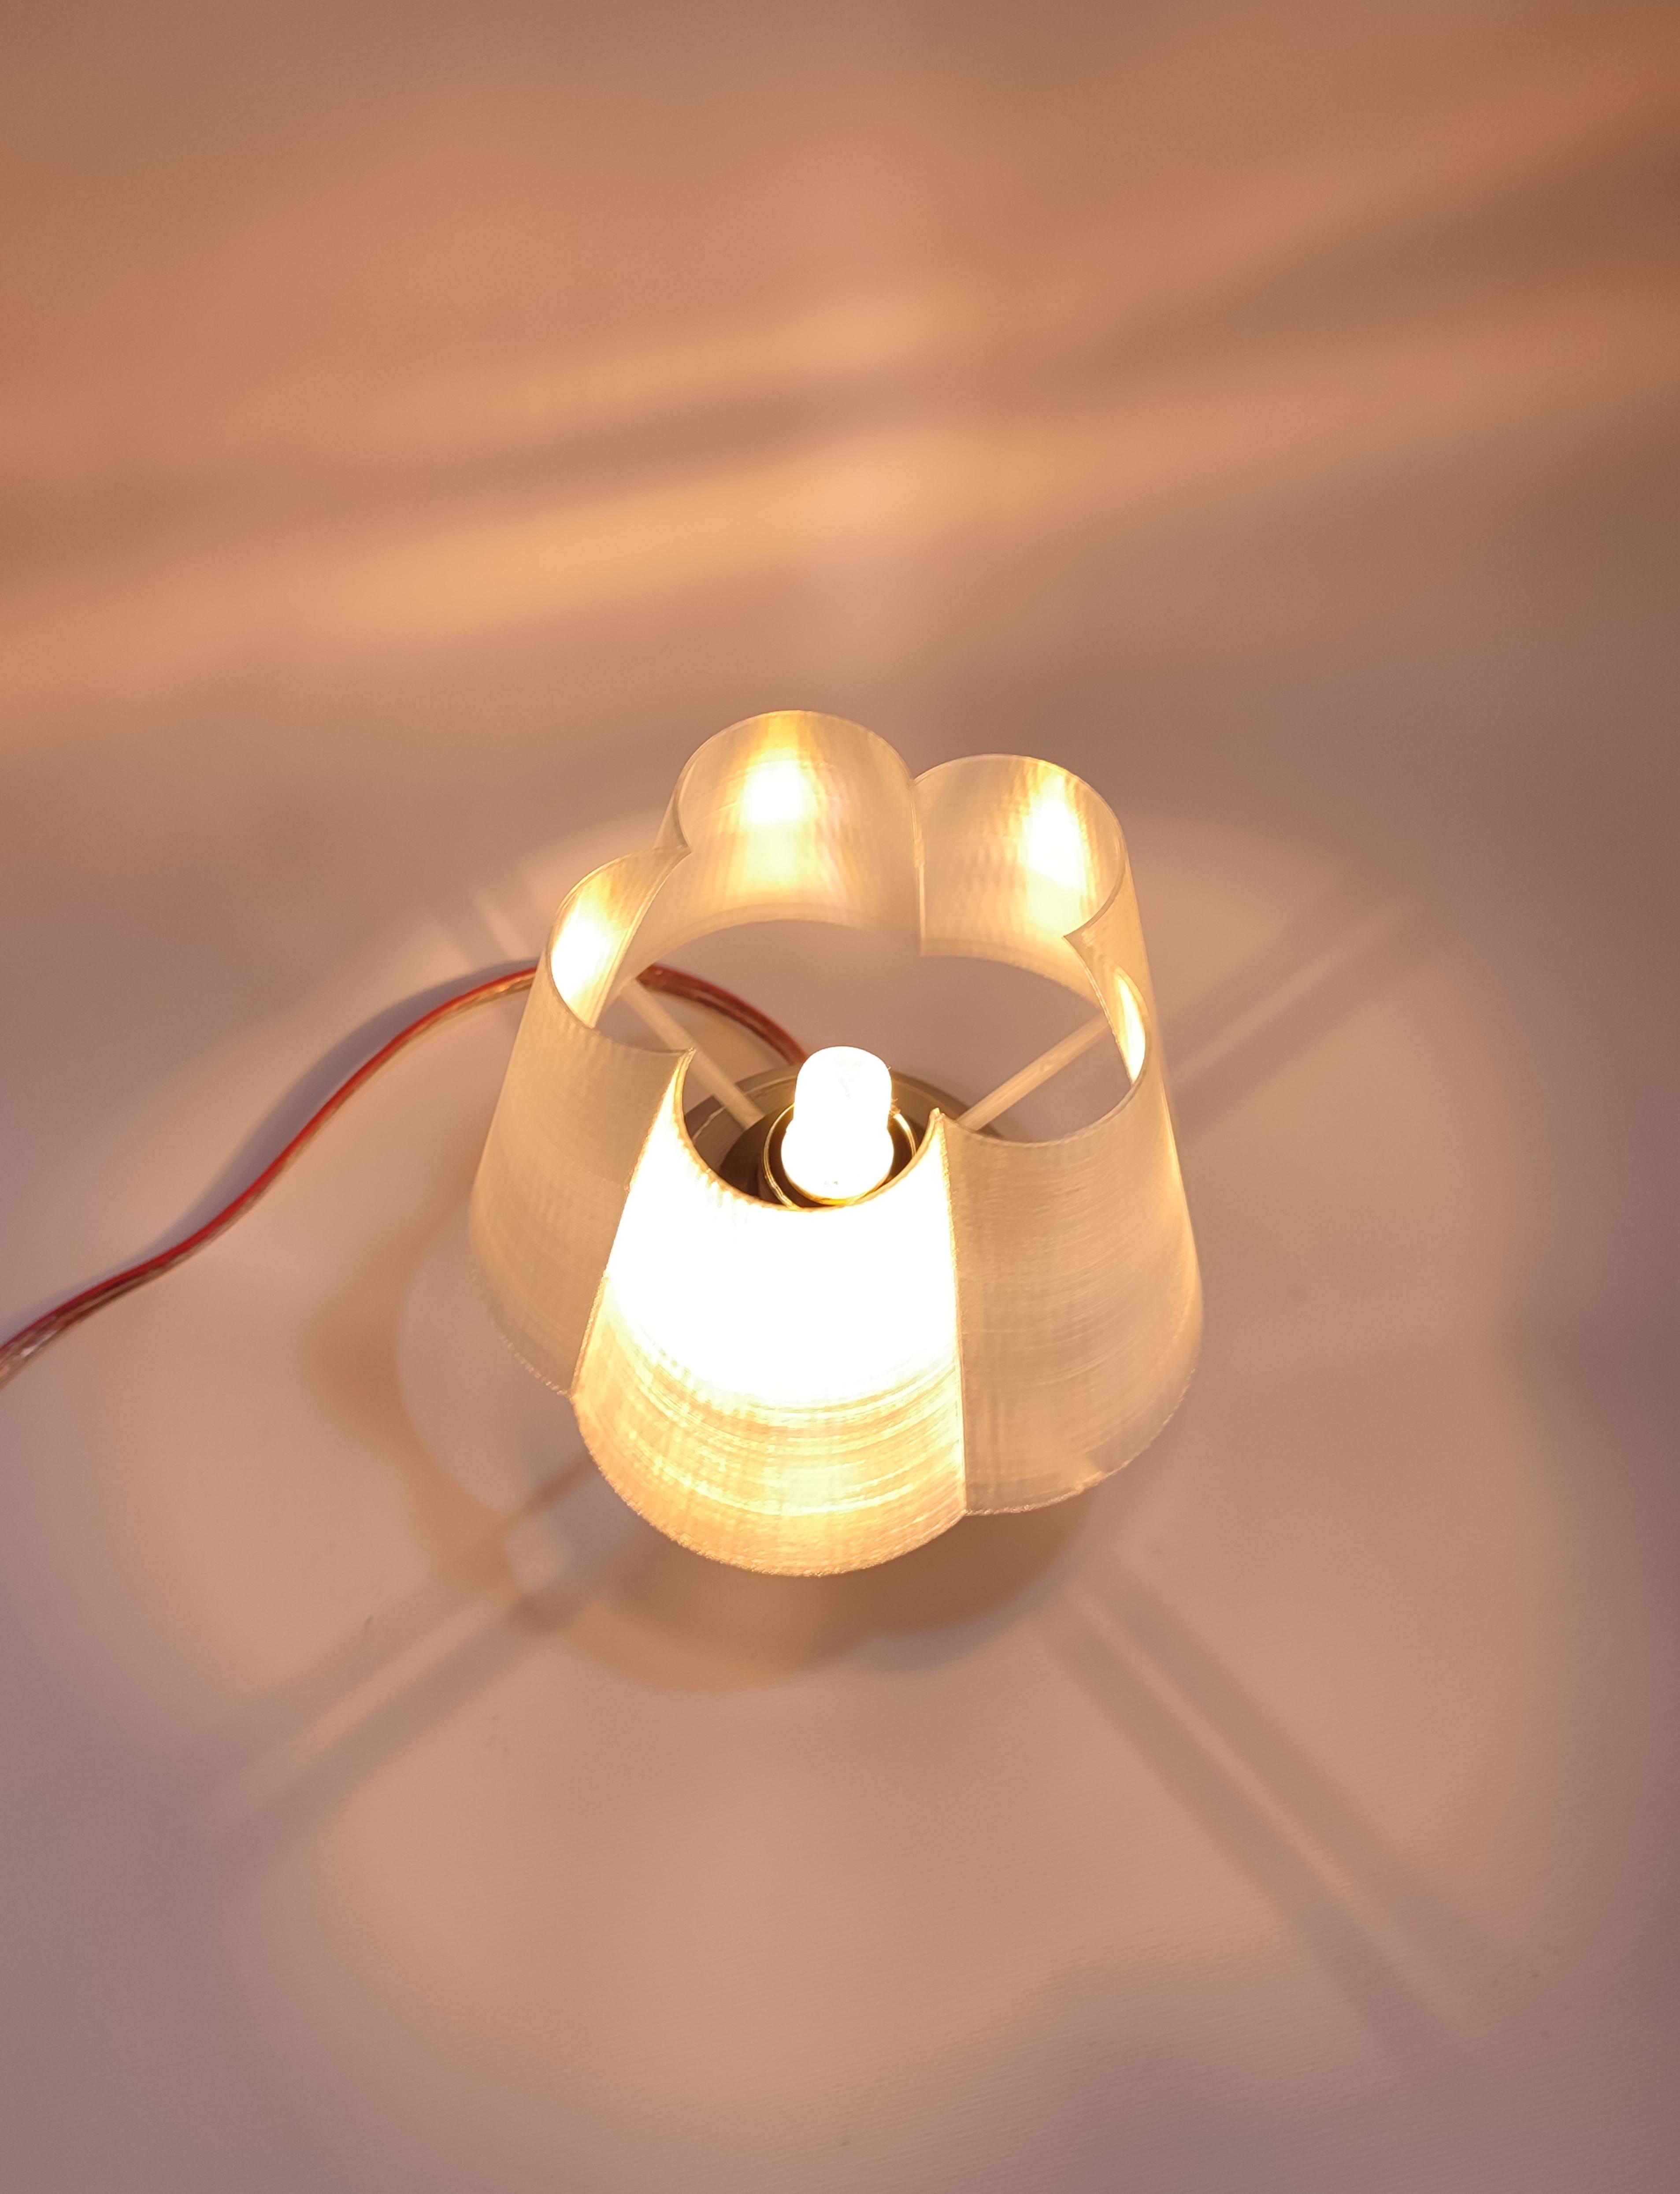 Mini-Flower Lamp 3d model